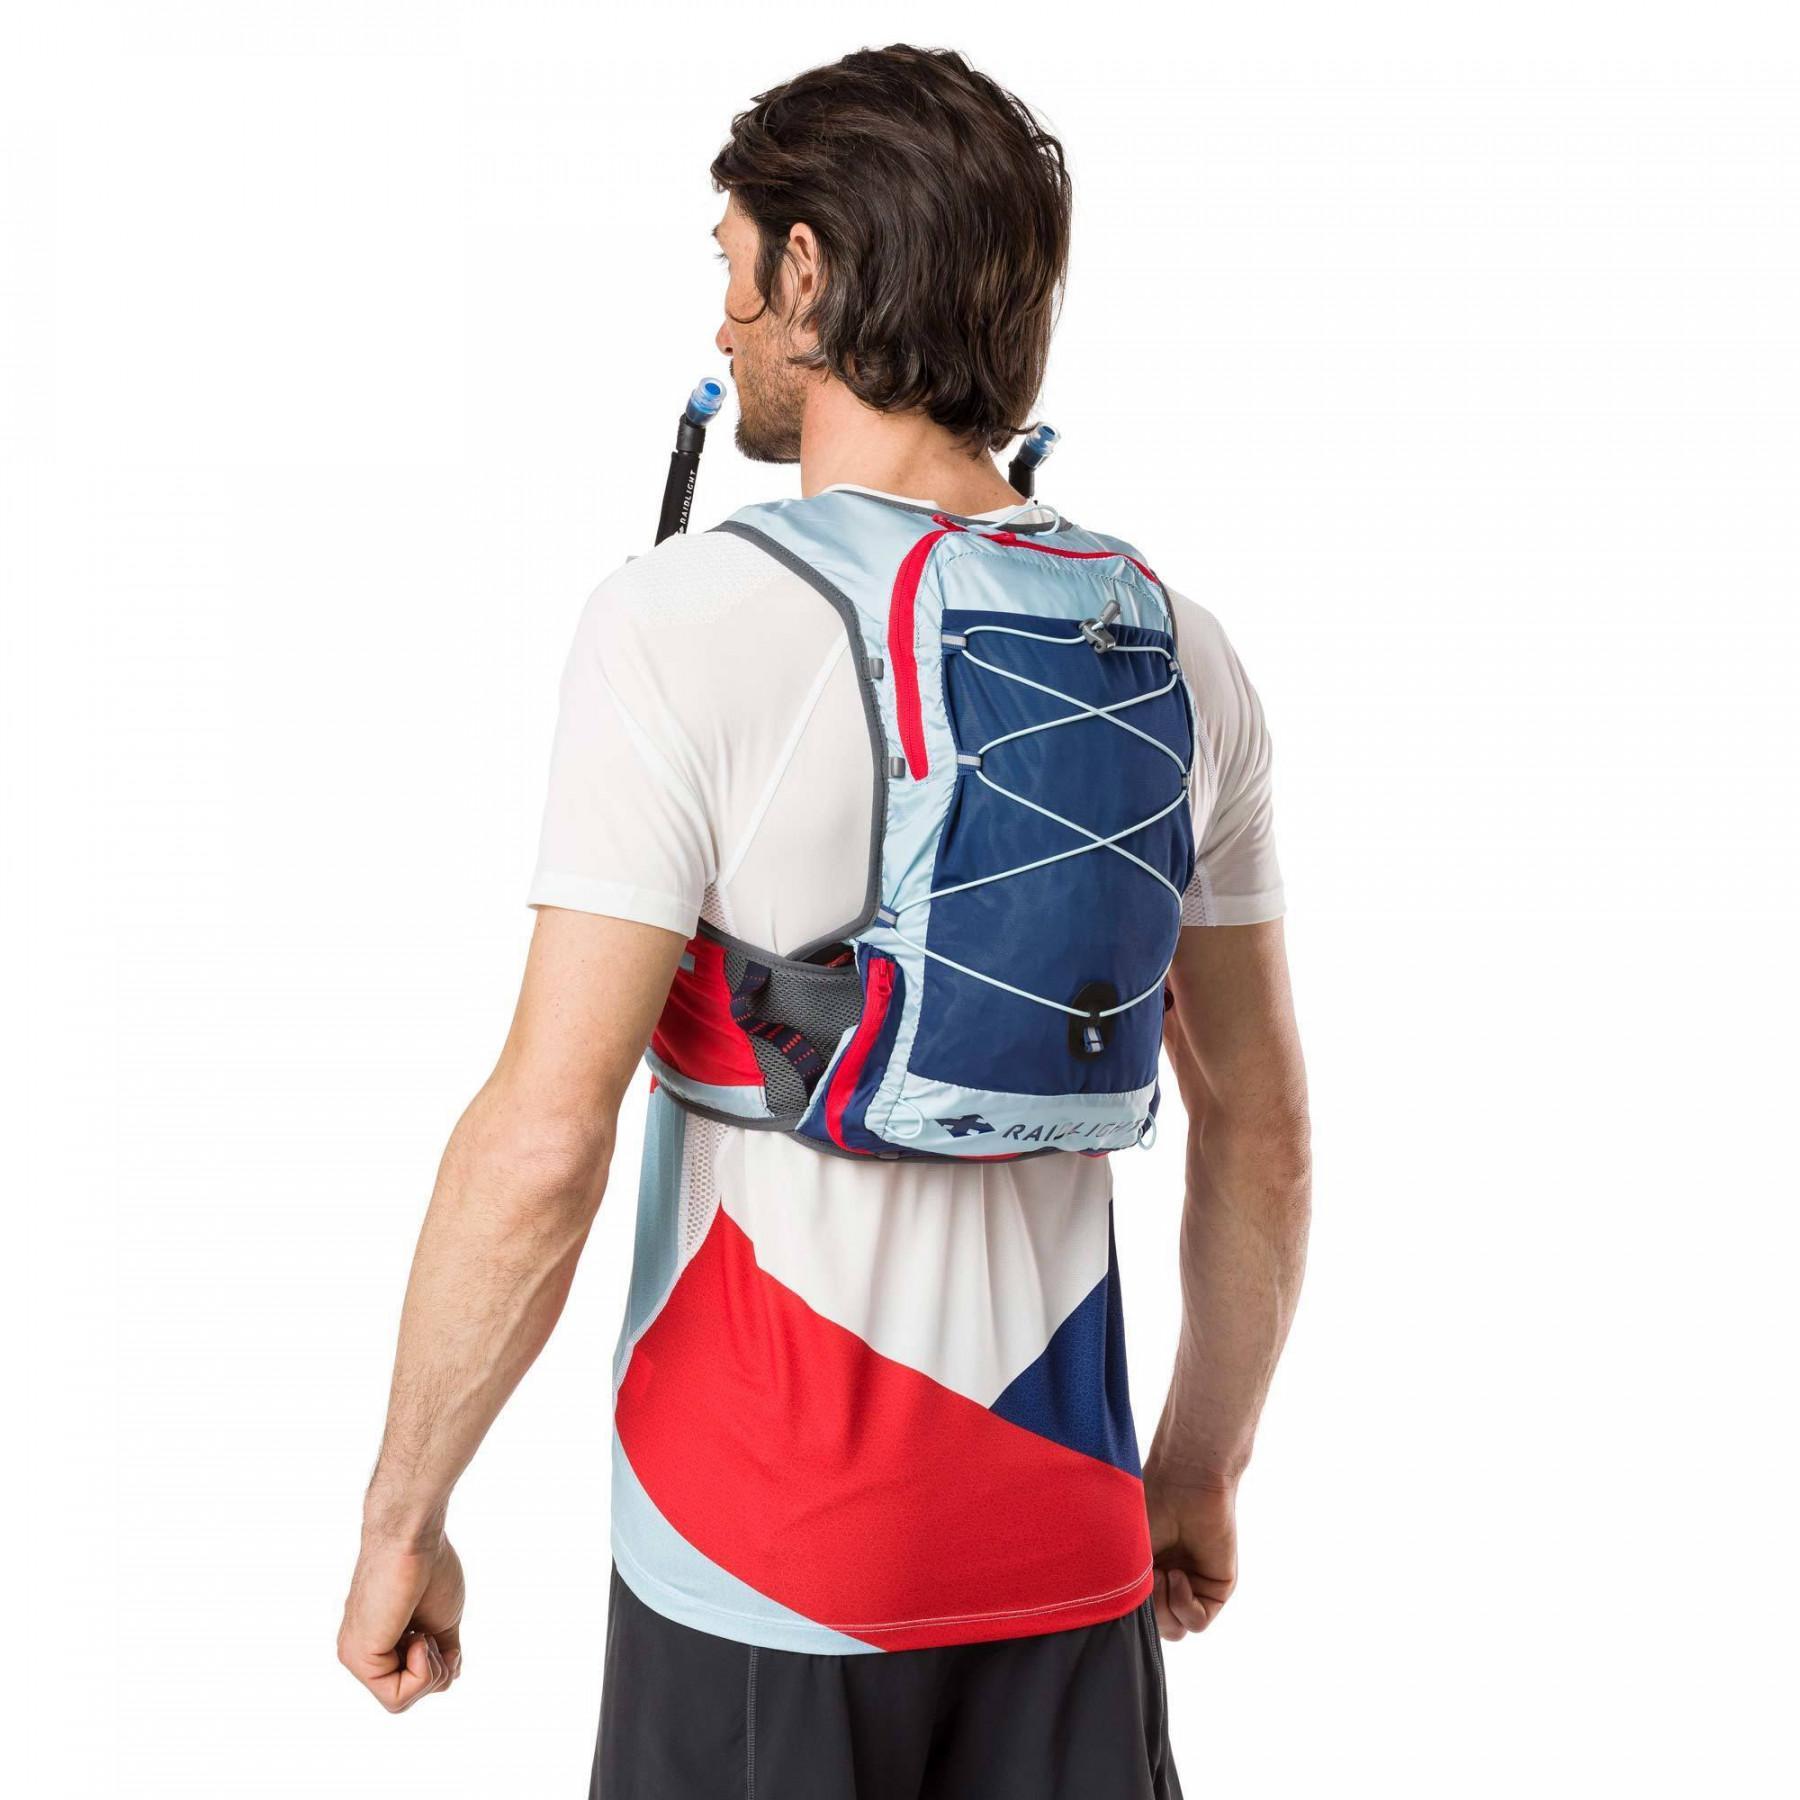 Backpack RaidLight activ vest 6l